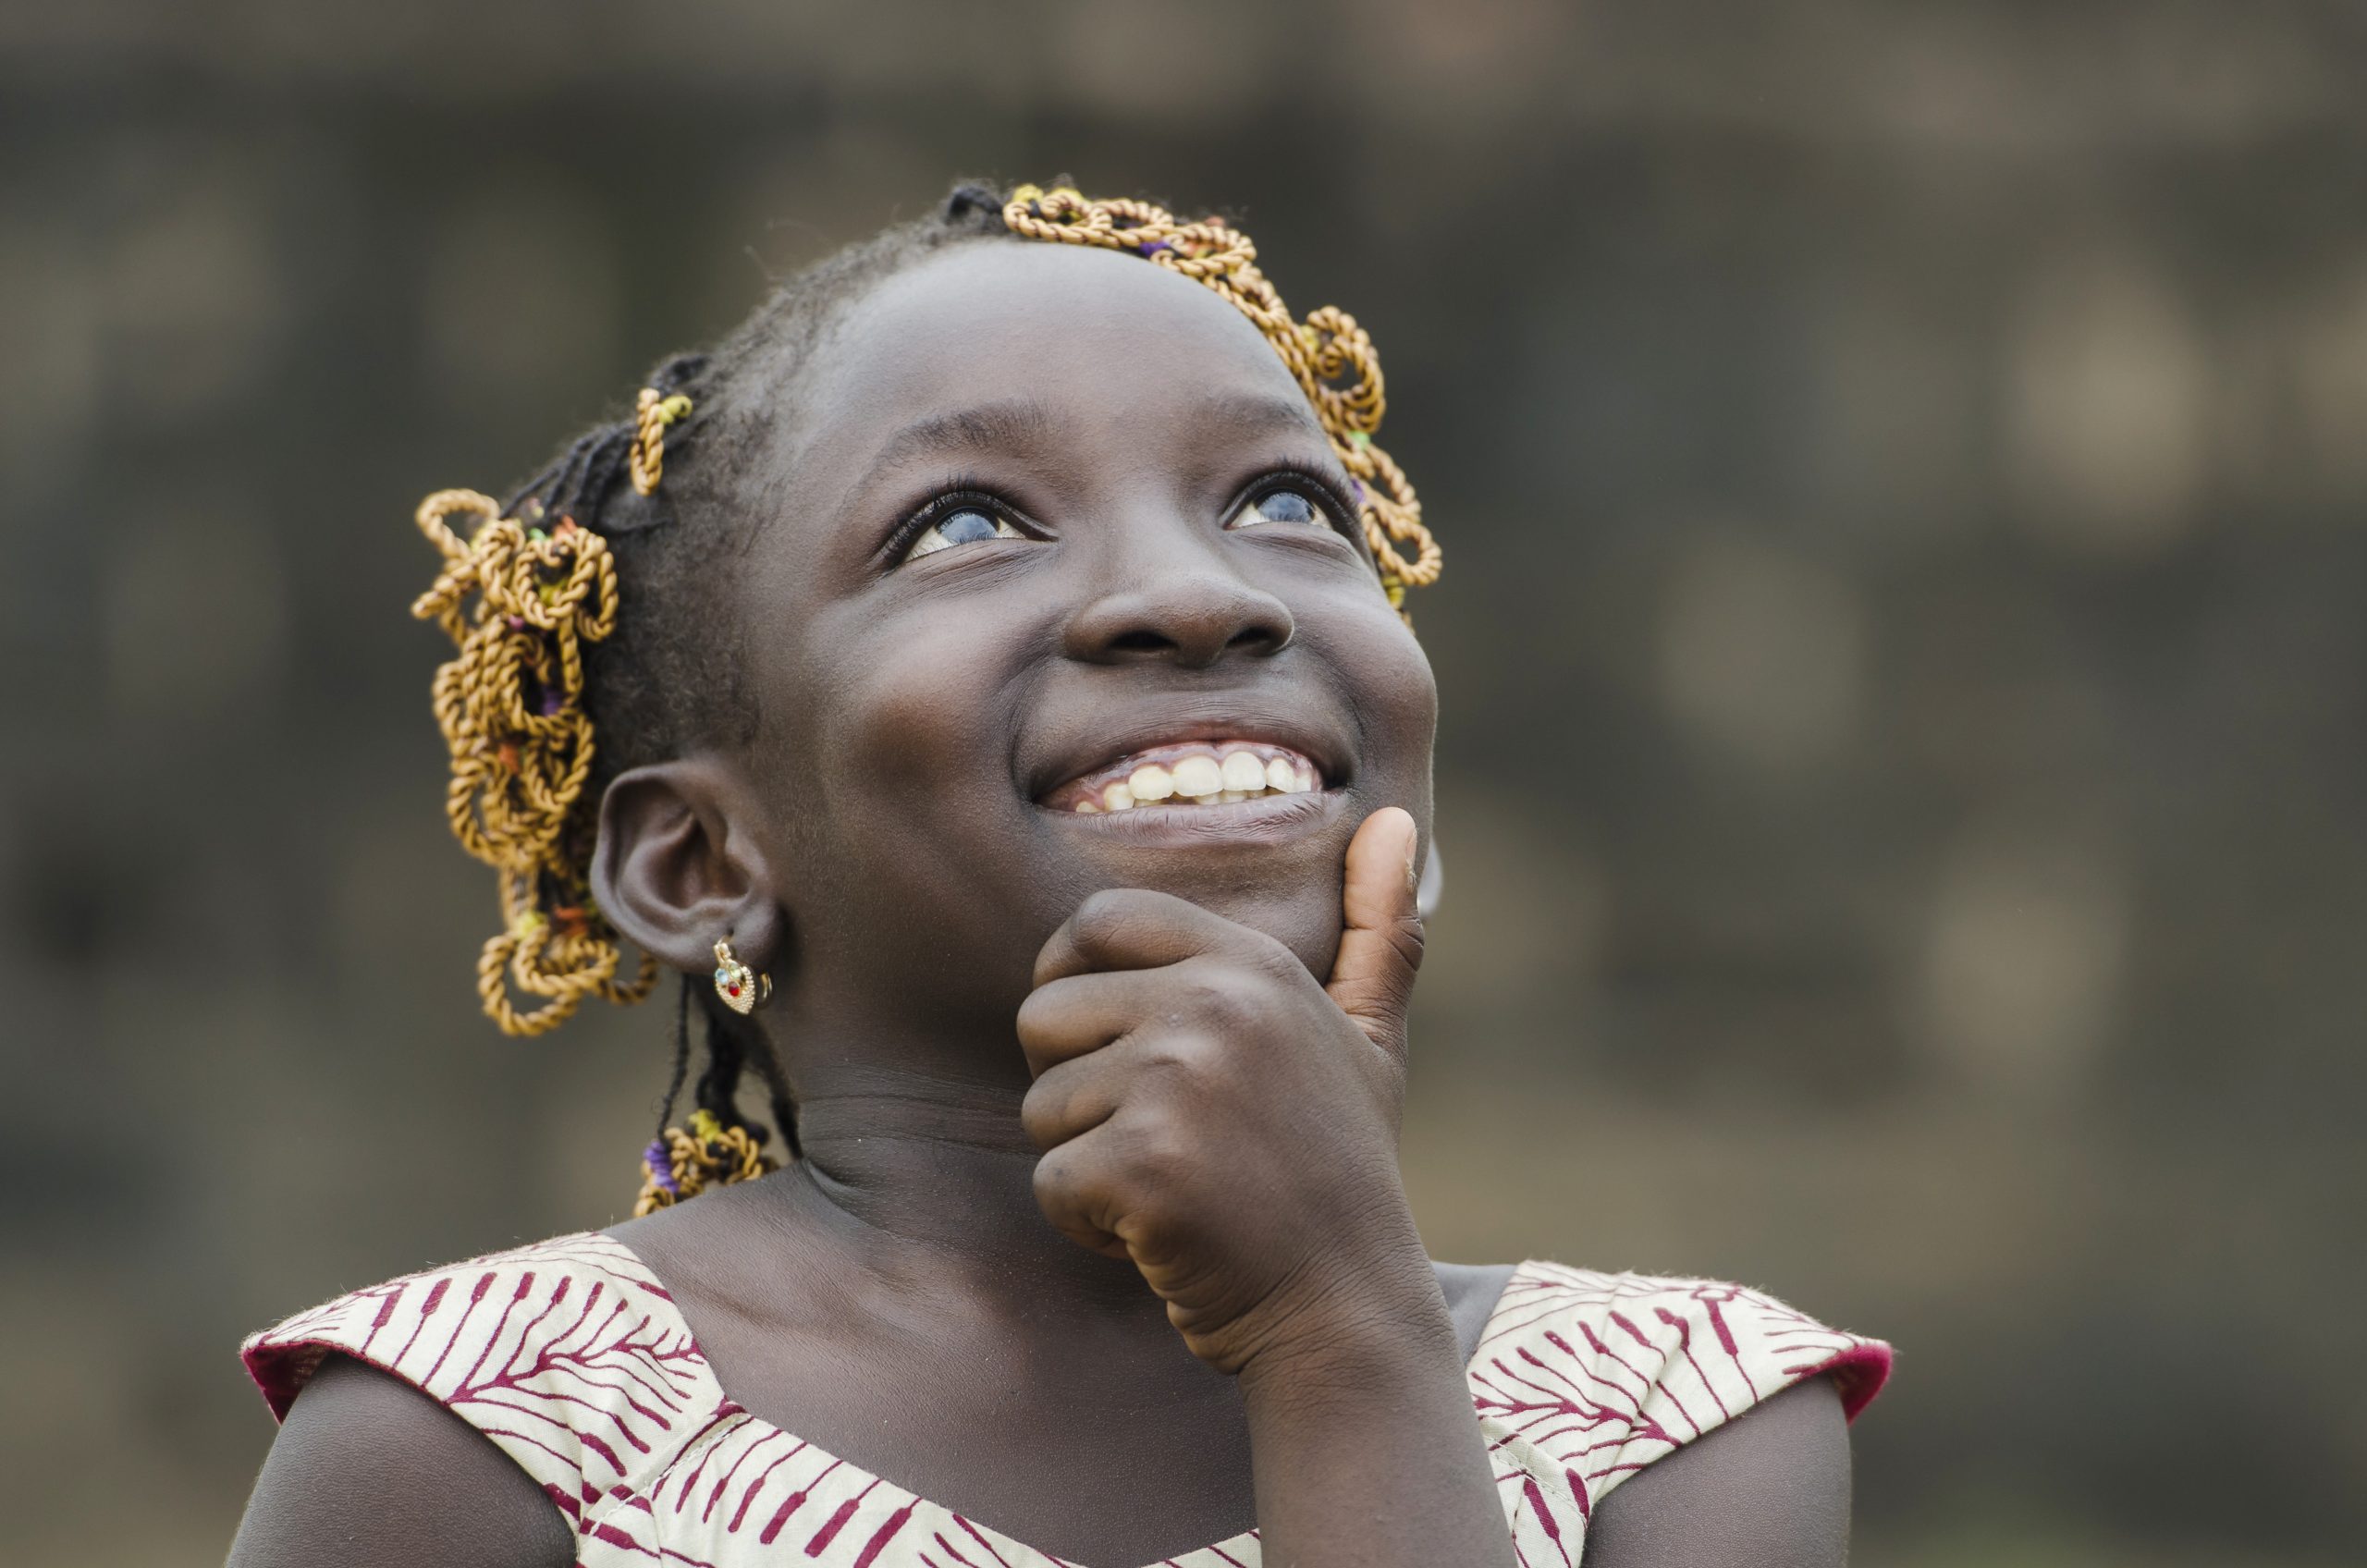 Día de las niñas - Sonrisas - Moneytrans Blog